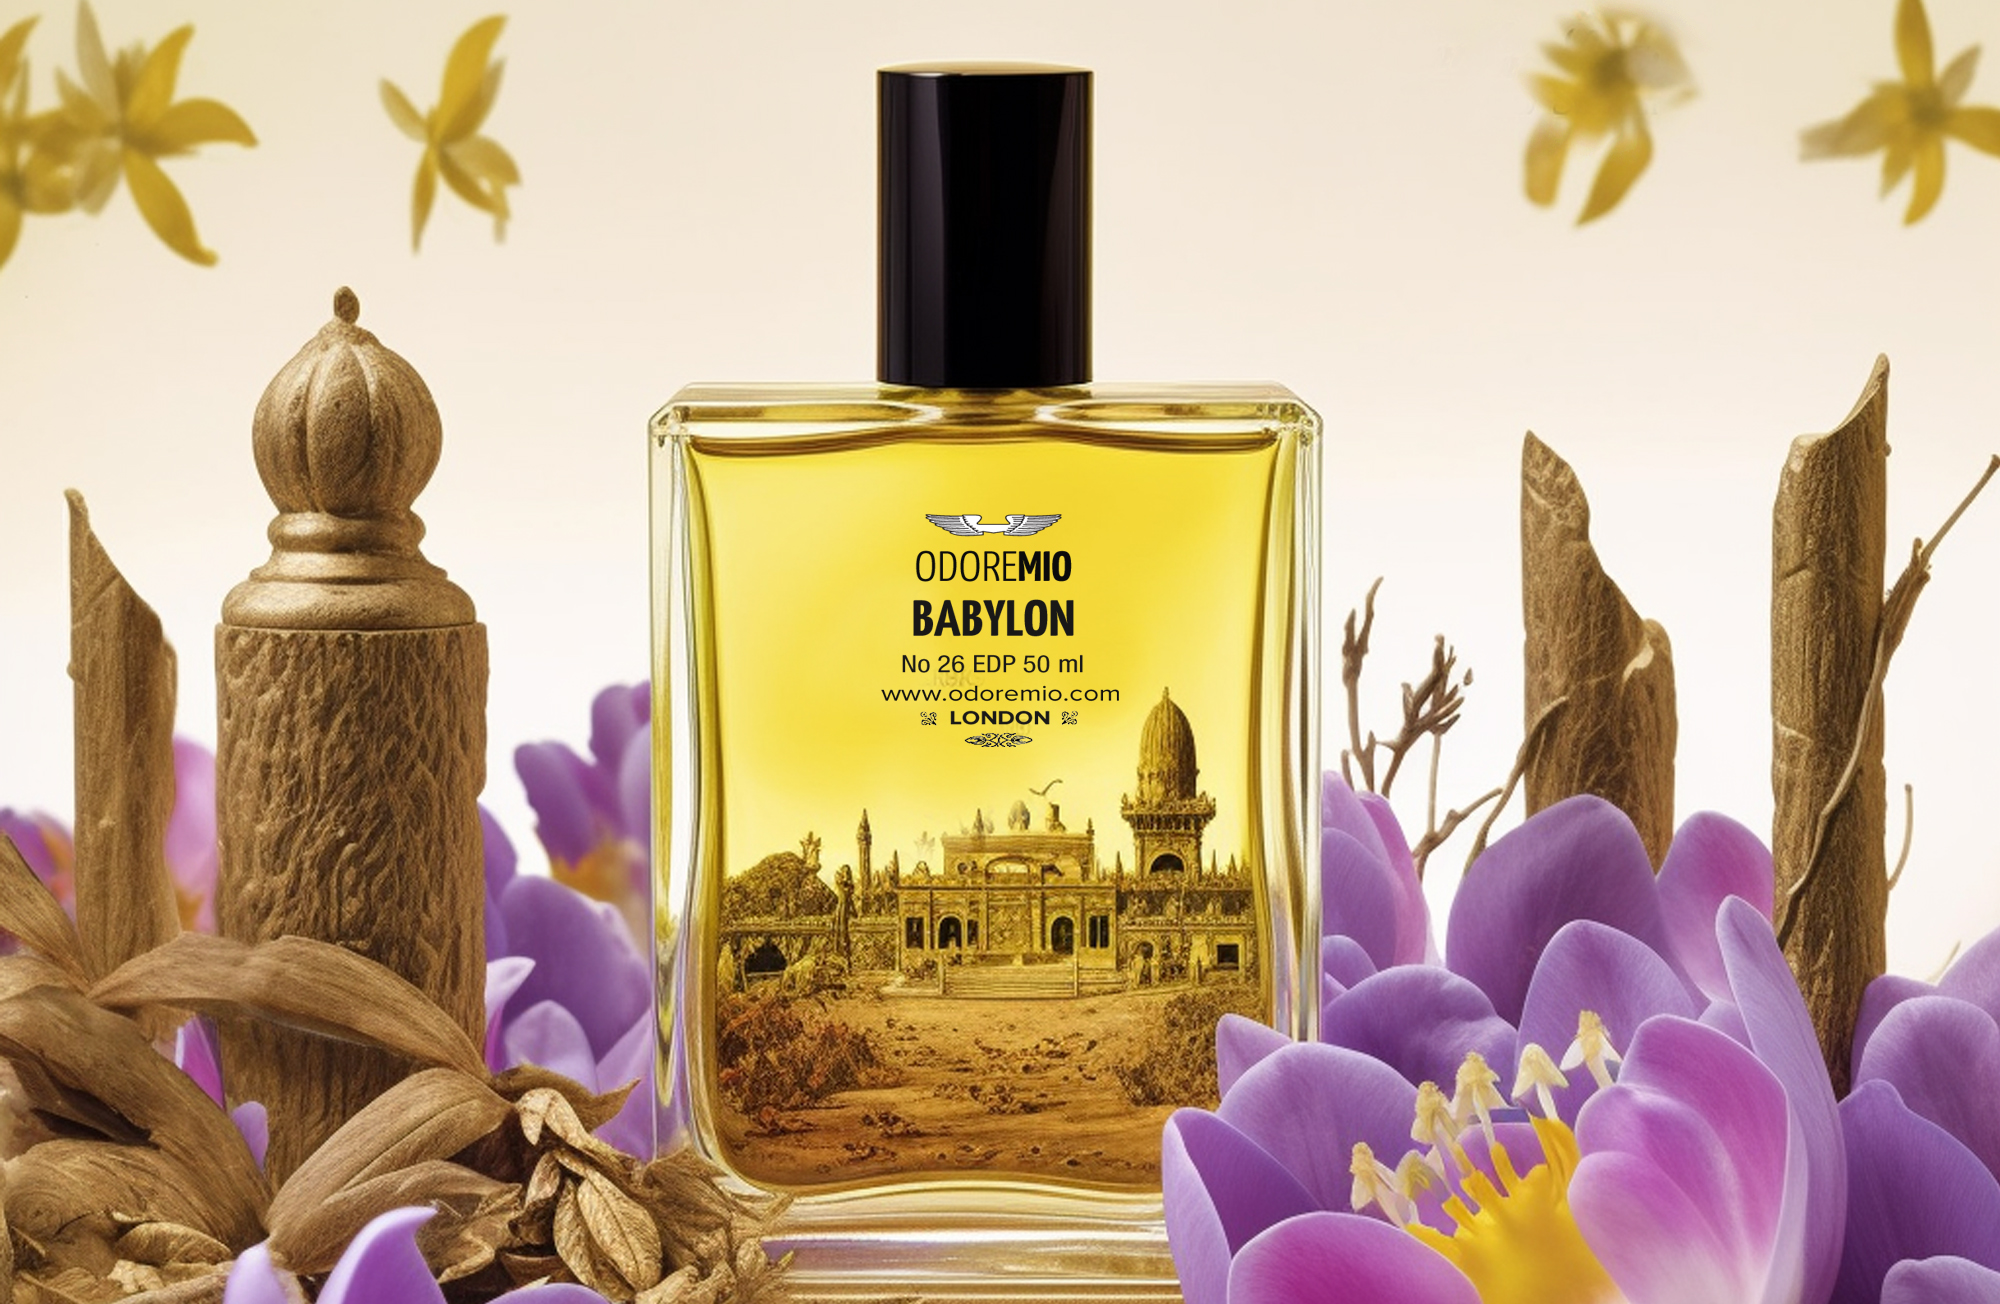 Babylon Perfume Odore Mio